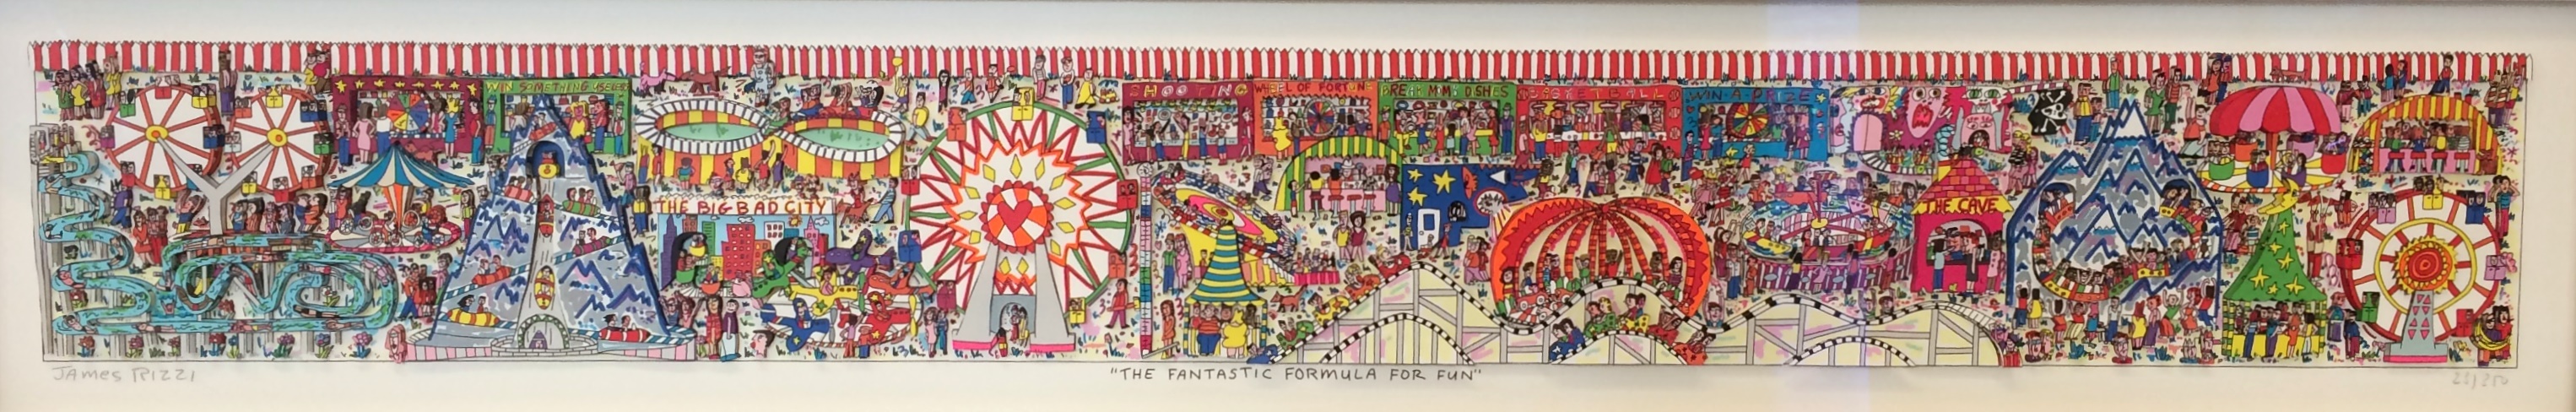 The Fantastic Formula For Fun